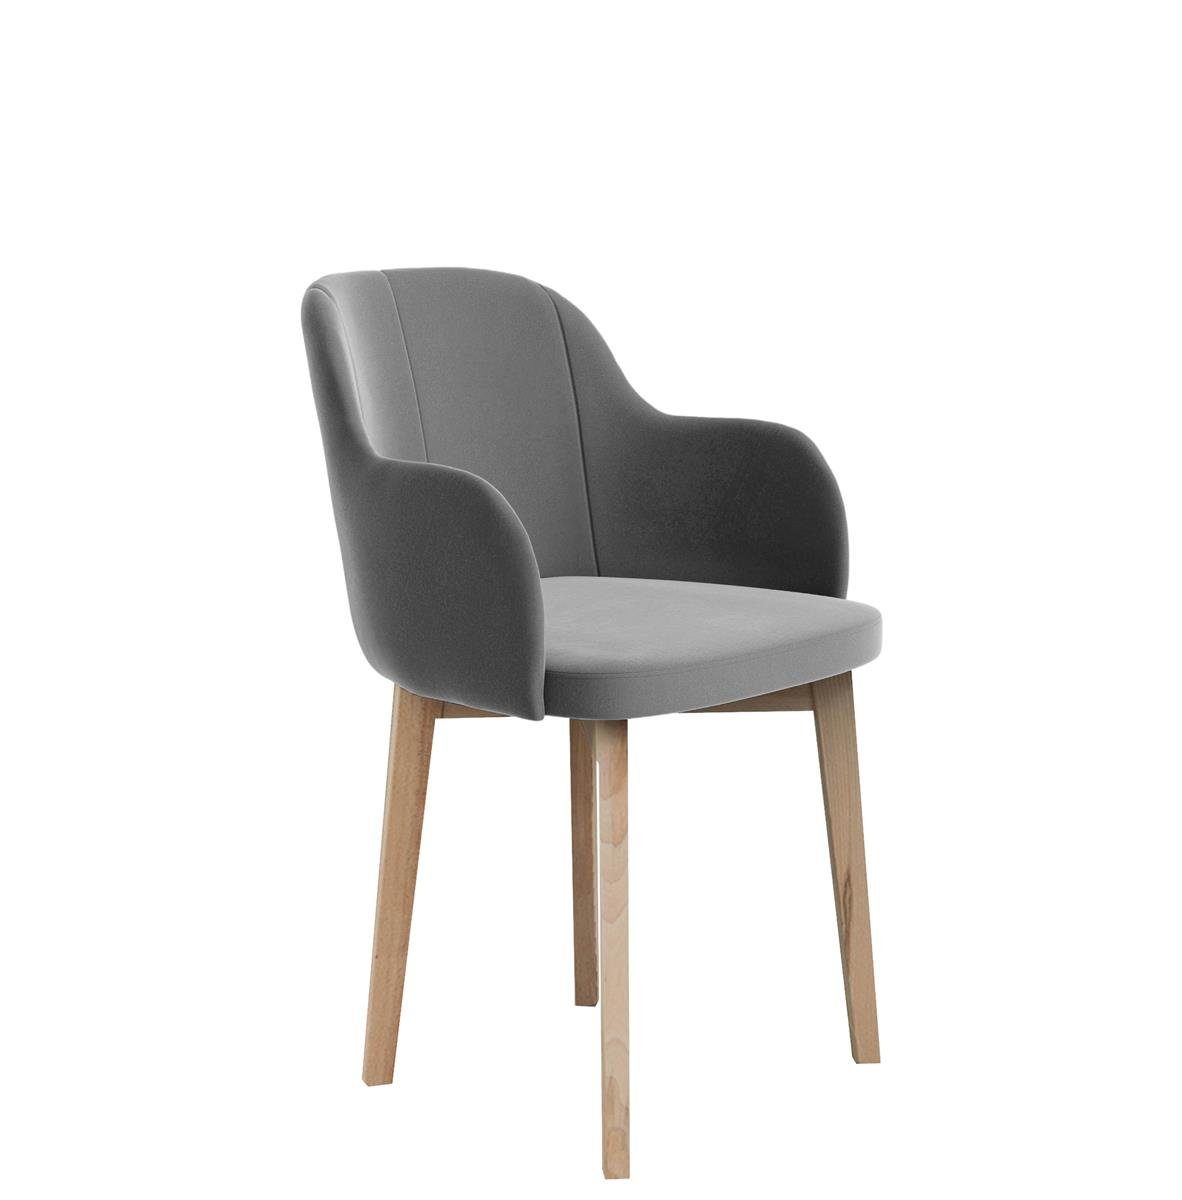 Beautysofa Polsterstuhl Relax (aus Veloursstoff), Stuhl für Wohnzimmer oder Büro, Relaxstuhl mit Holzbeine Hellgrau (riviera 91)